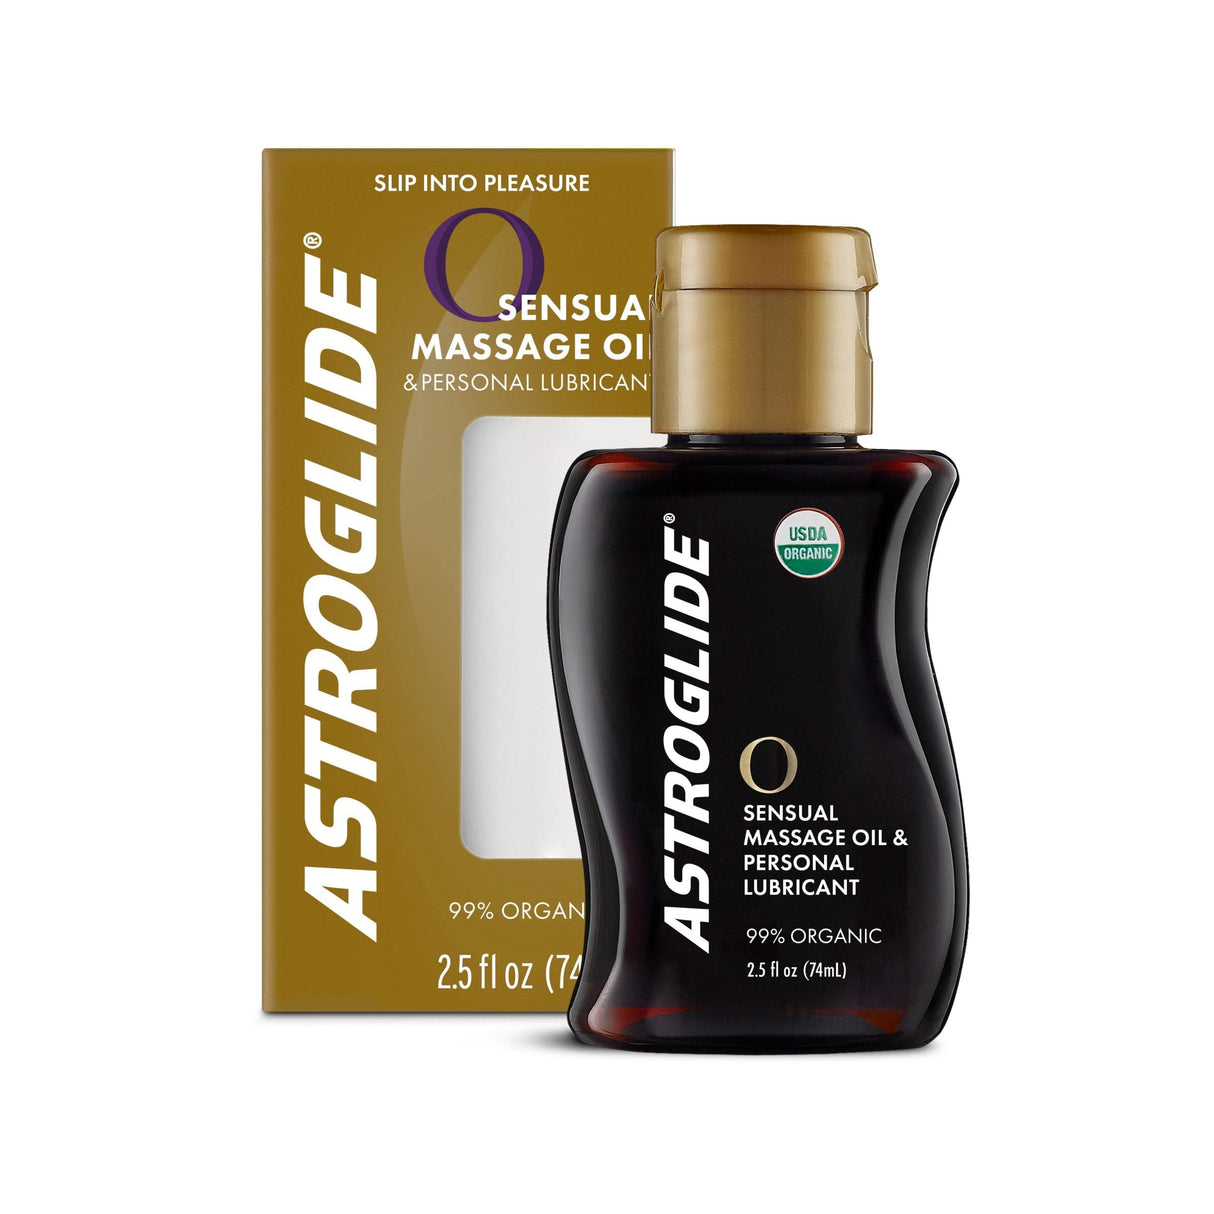 Astroglide - O Sensual Massage Oil and Personal Lubricant  74ml 015594011738 Massage Oil